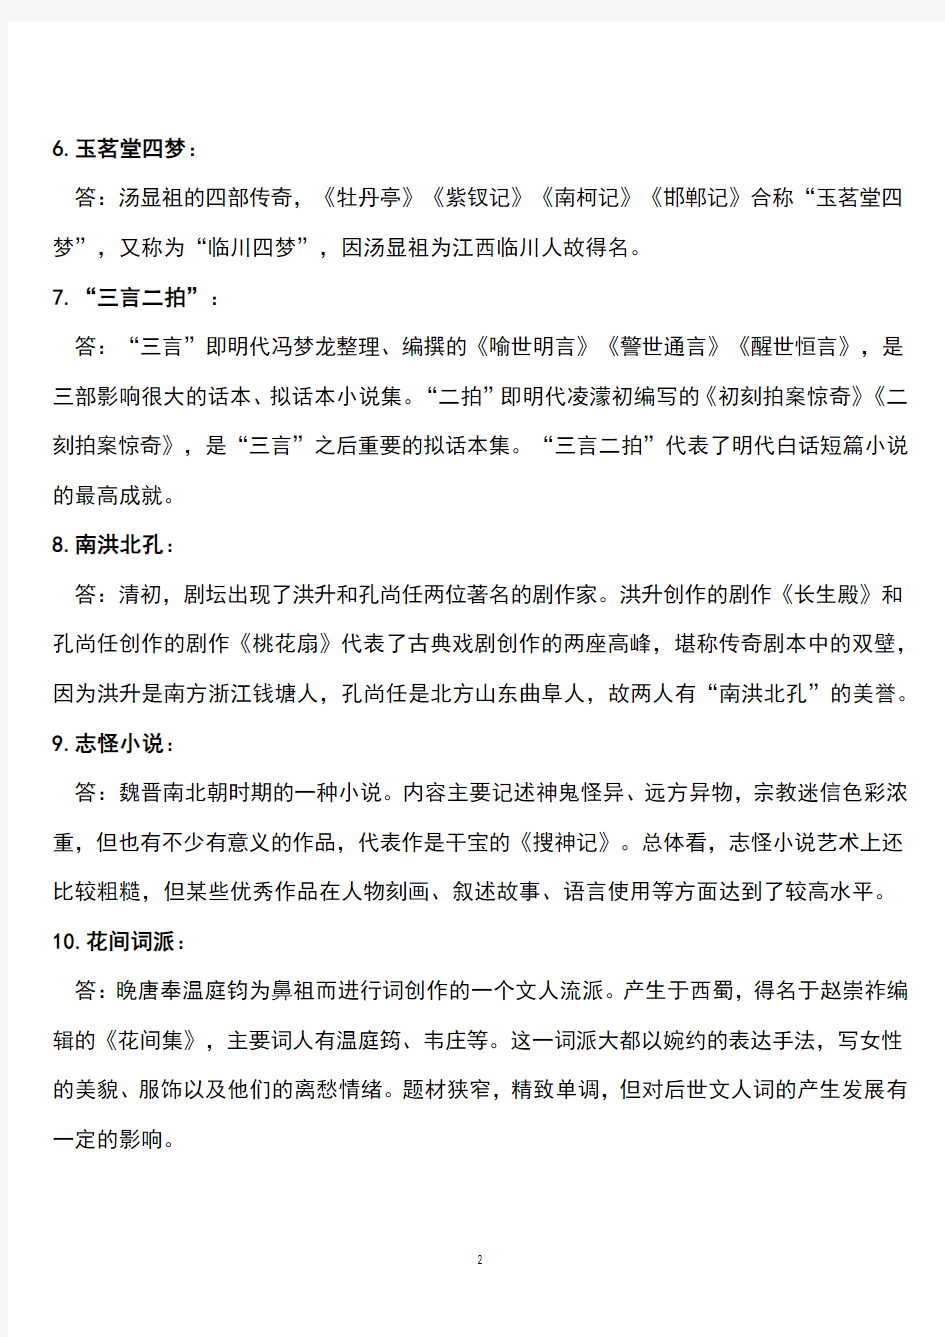 中国古代文学提纲(1)(2020年整理).pdf